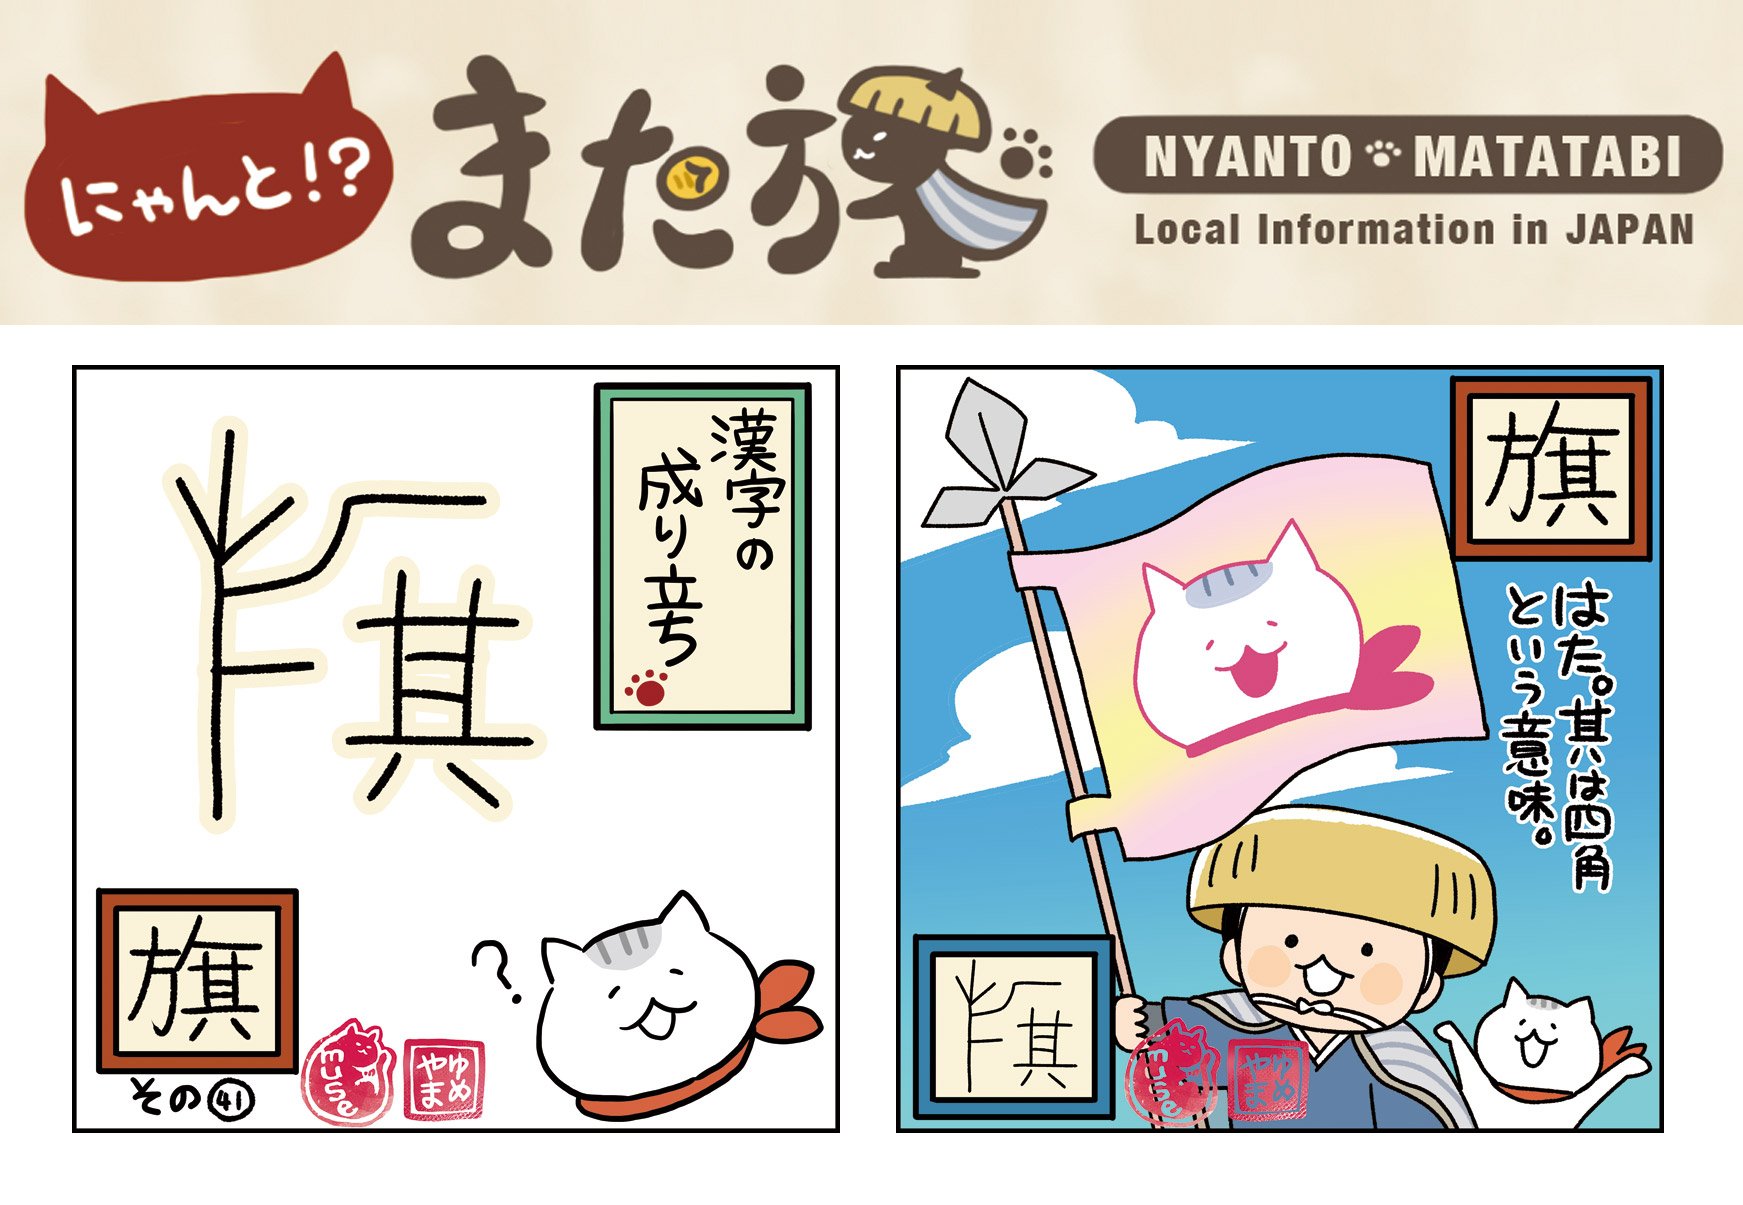 にゃんと また旅tv Nyantabi 公式 第323回 にゃんとまた旅カレンダーは 漢字の成り立ち 旗 ねこ 漫画 にゃんとまた旅 漢字 旗 観光 T Co Sqmo25mjbd T Co Txsibjbdpa Twitter